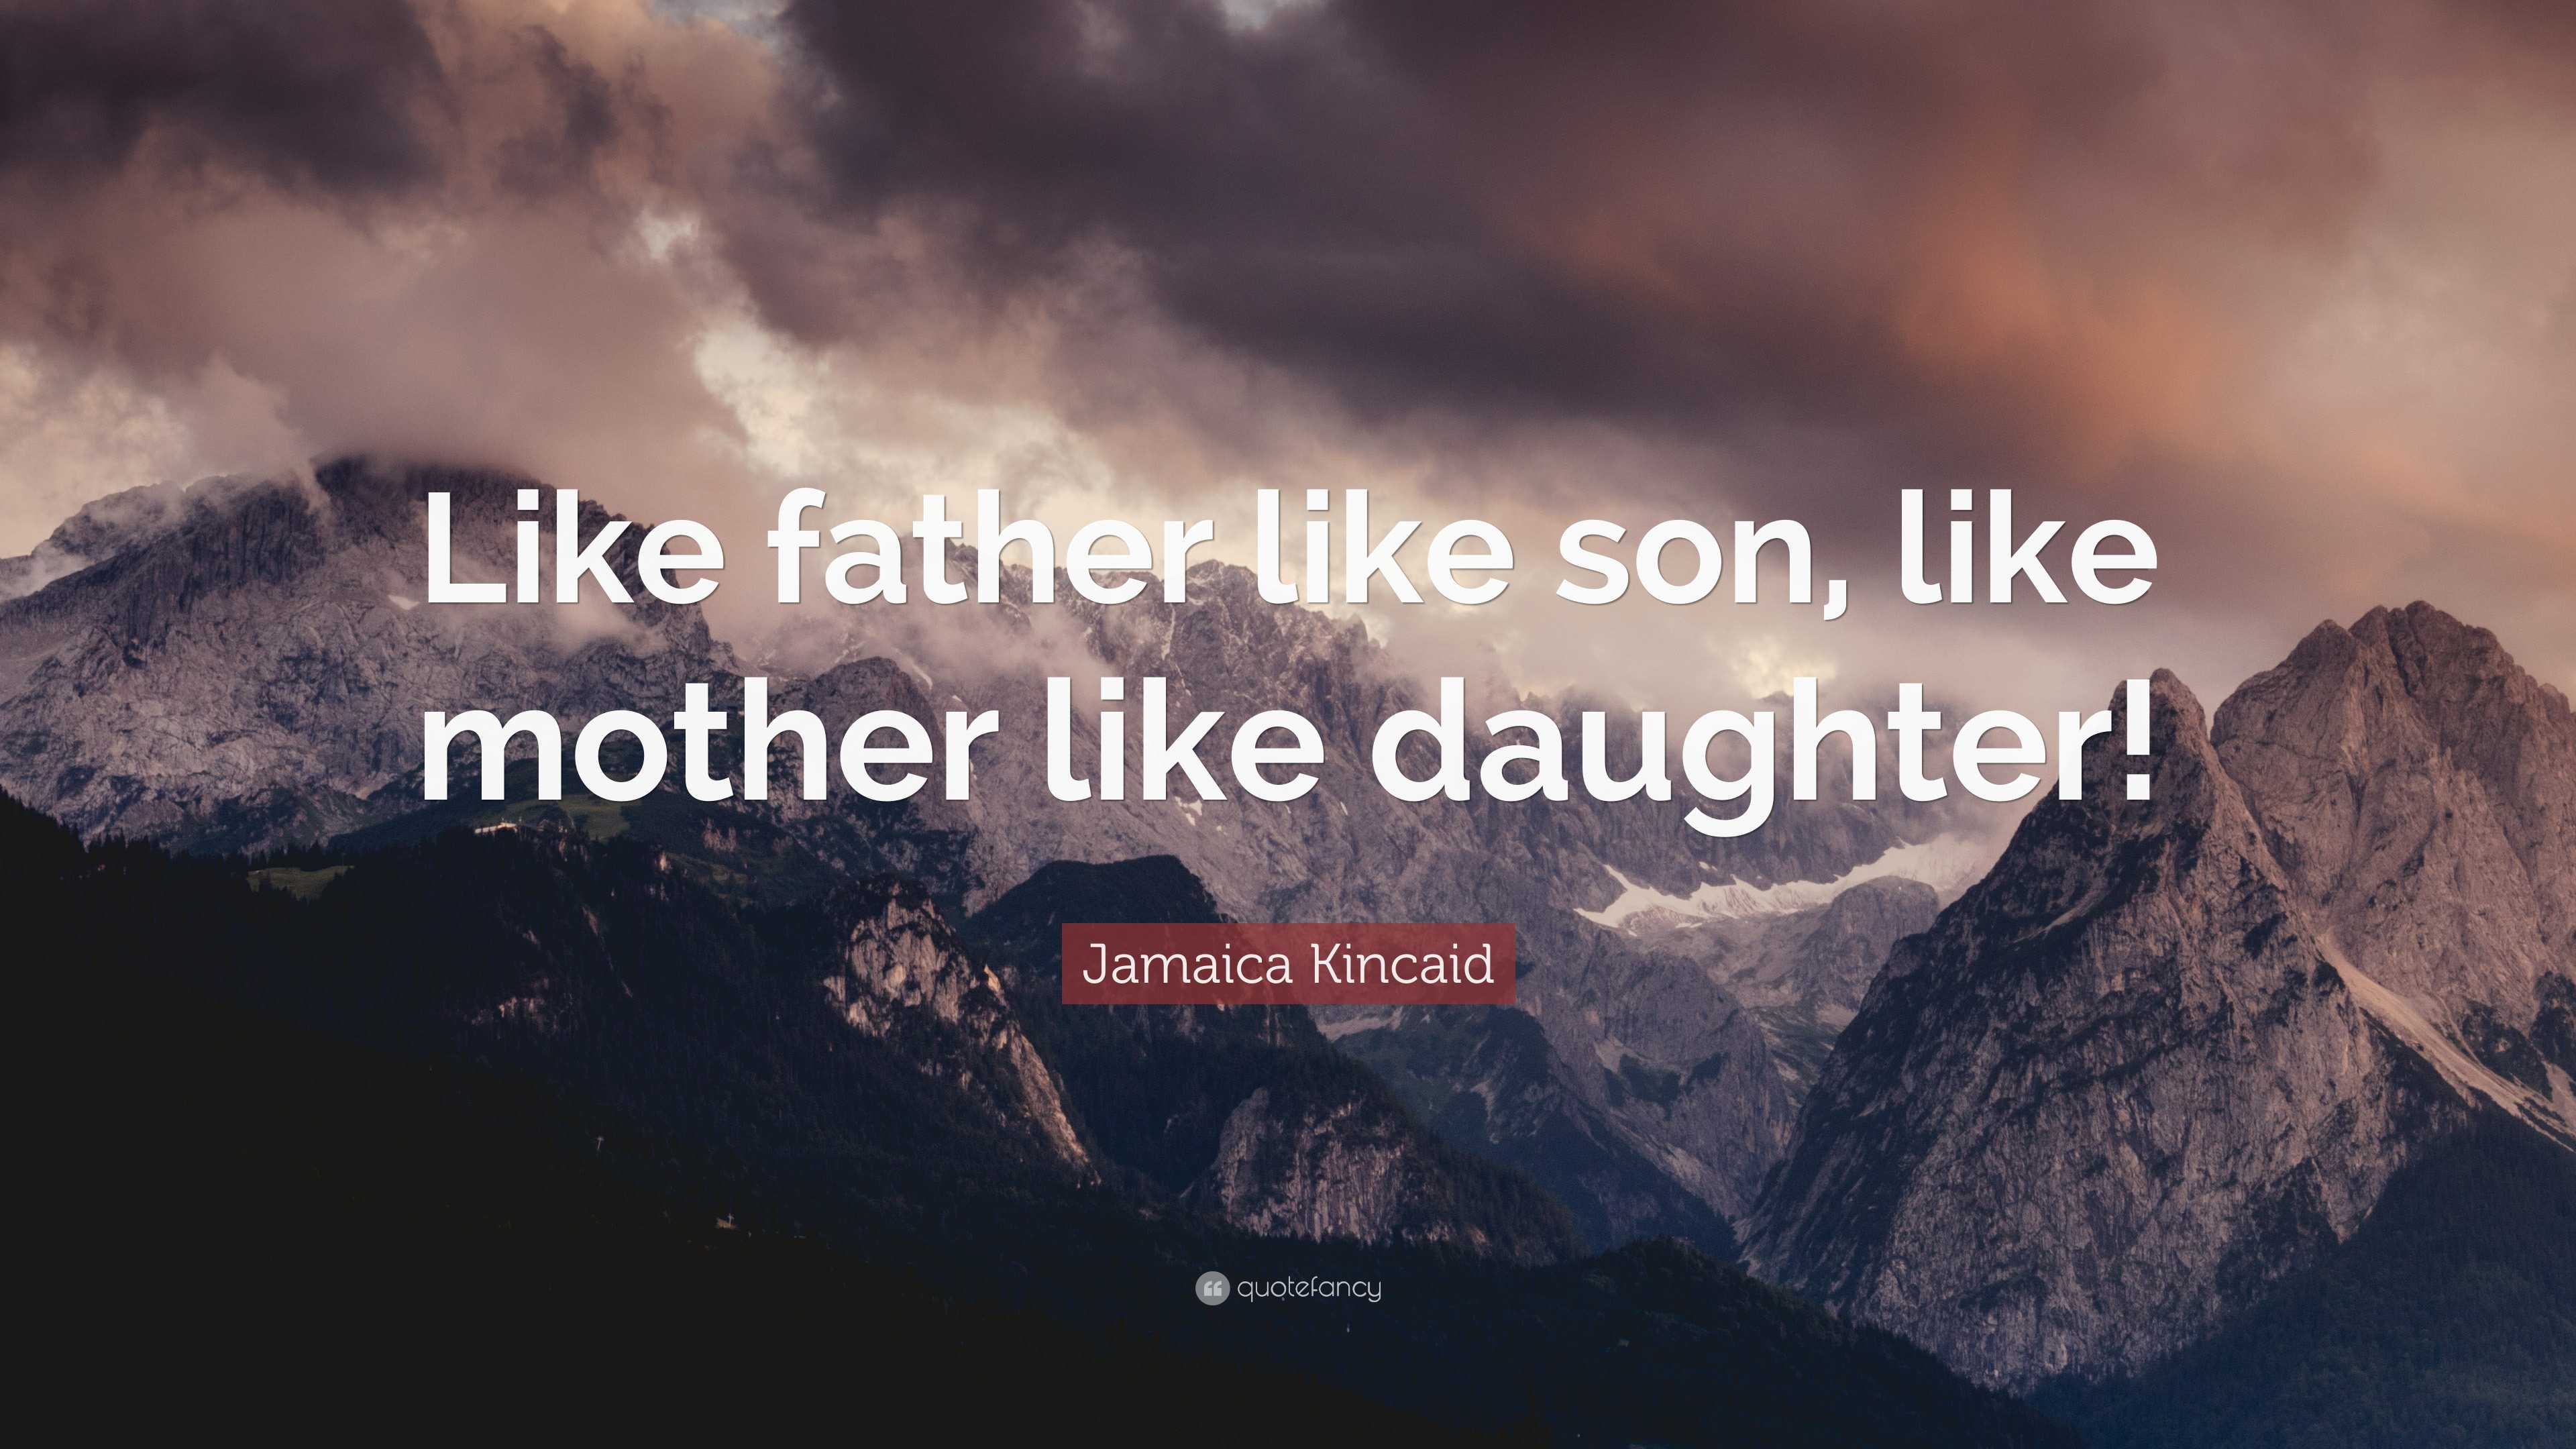 Jamaica Kincaid Quote: “Like father like son, like mother like